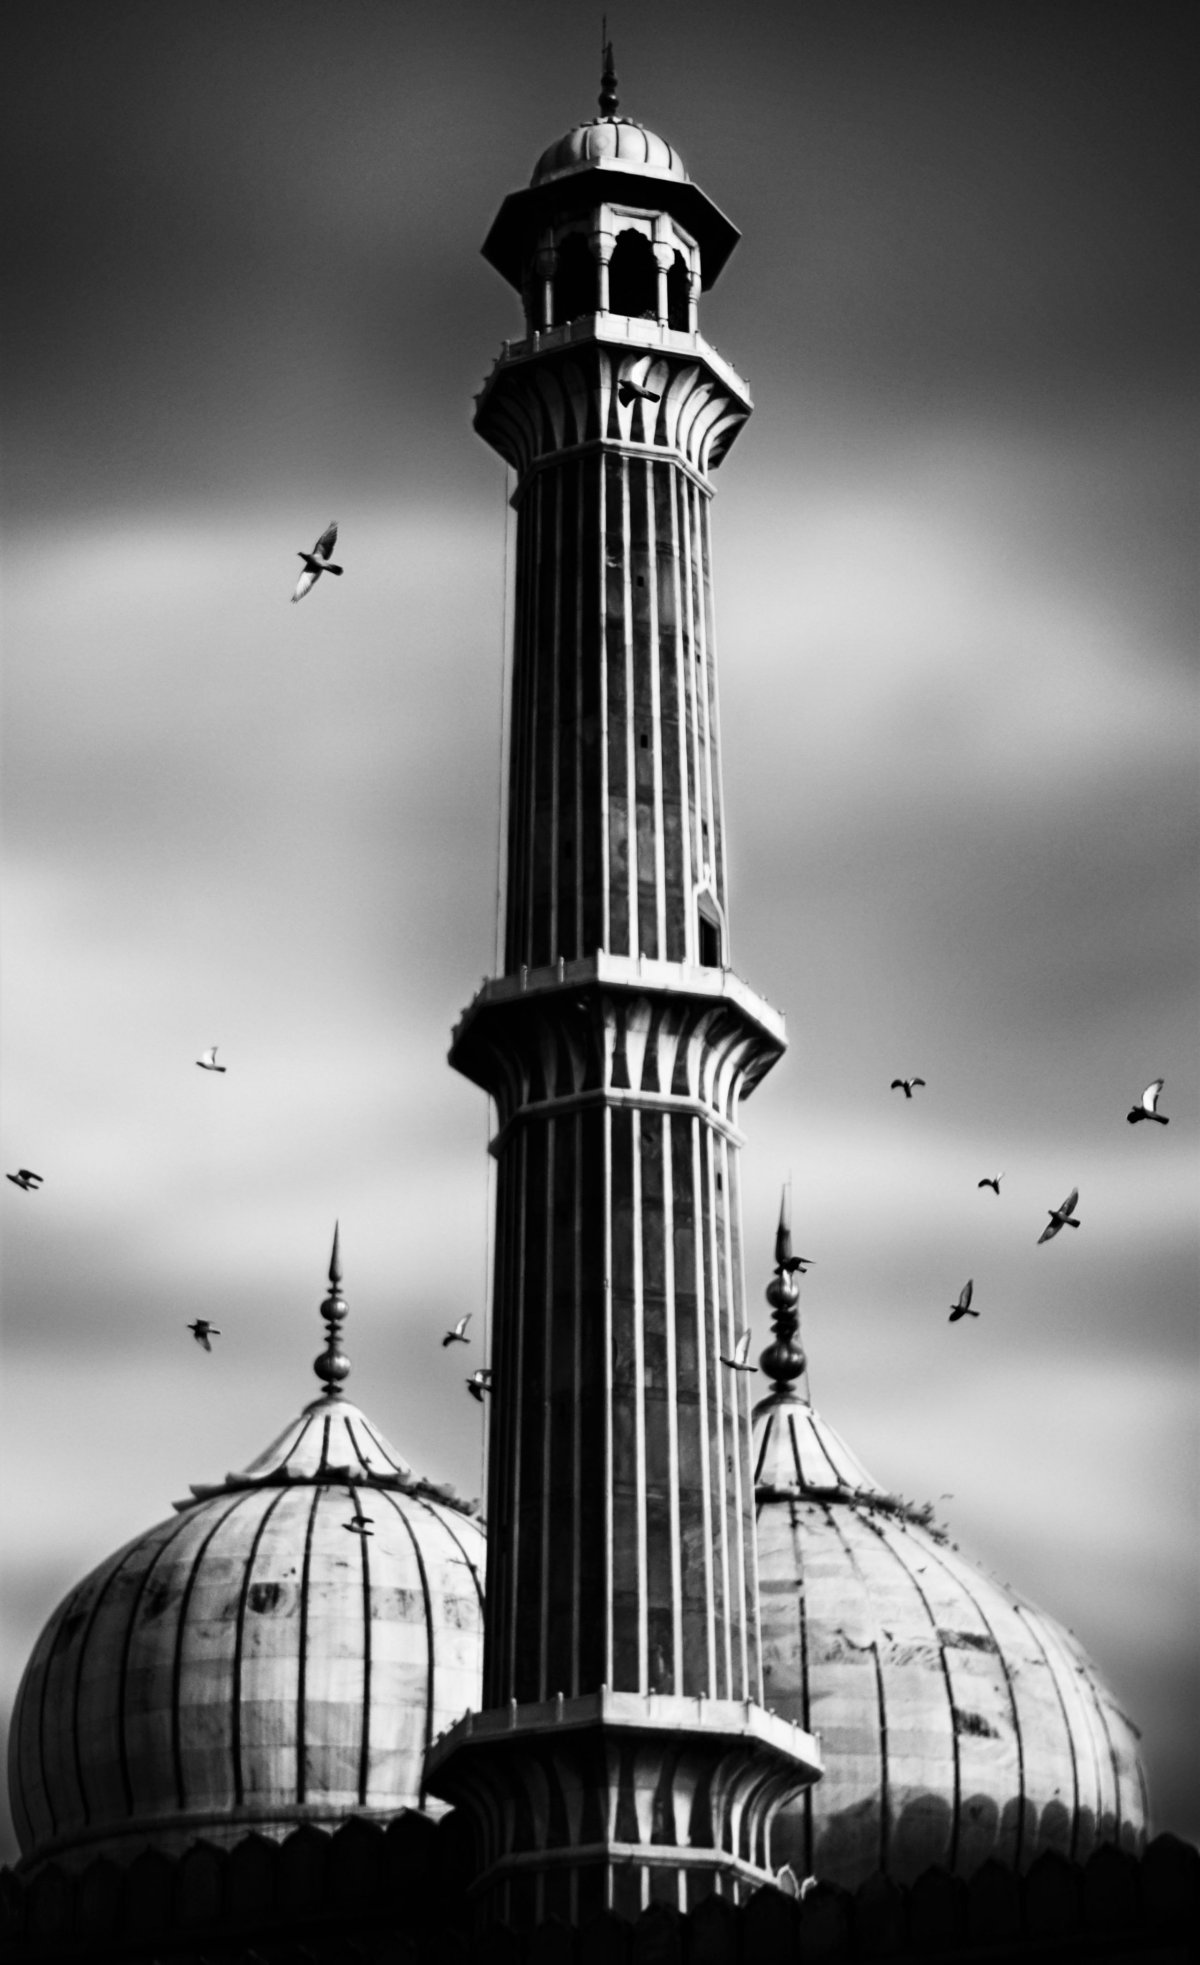 Velká mešita